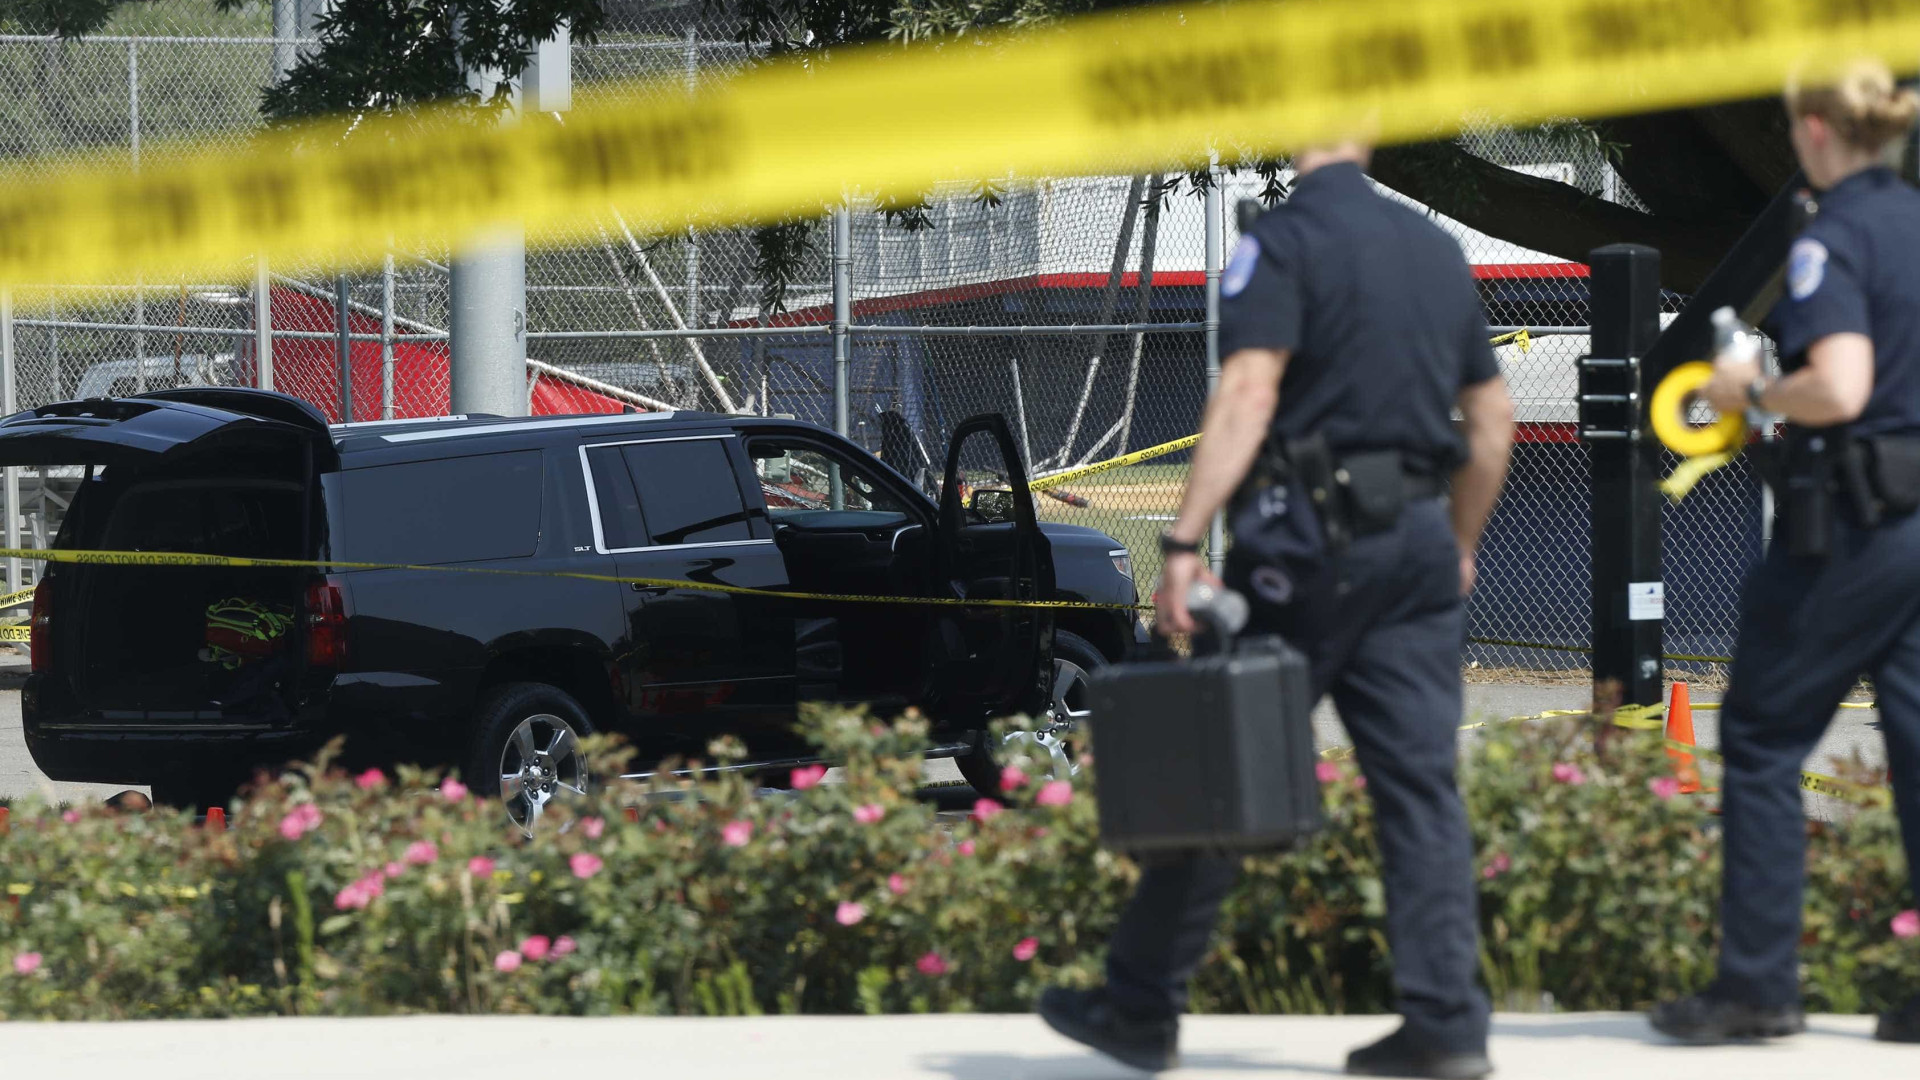 Ataque a tiros em Virginia Beach deixa 12 mortos, incluindo o suspeito